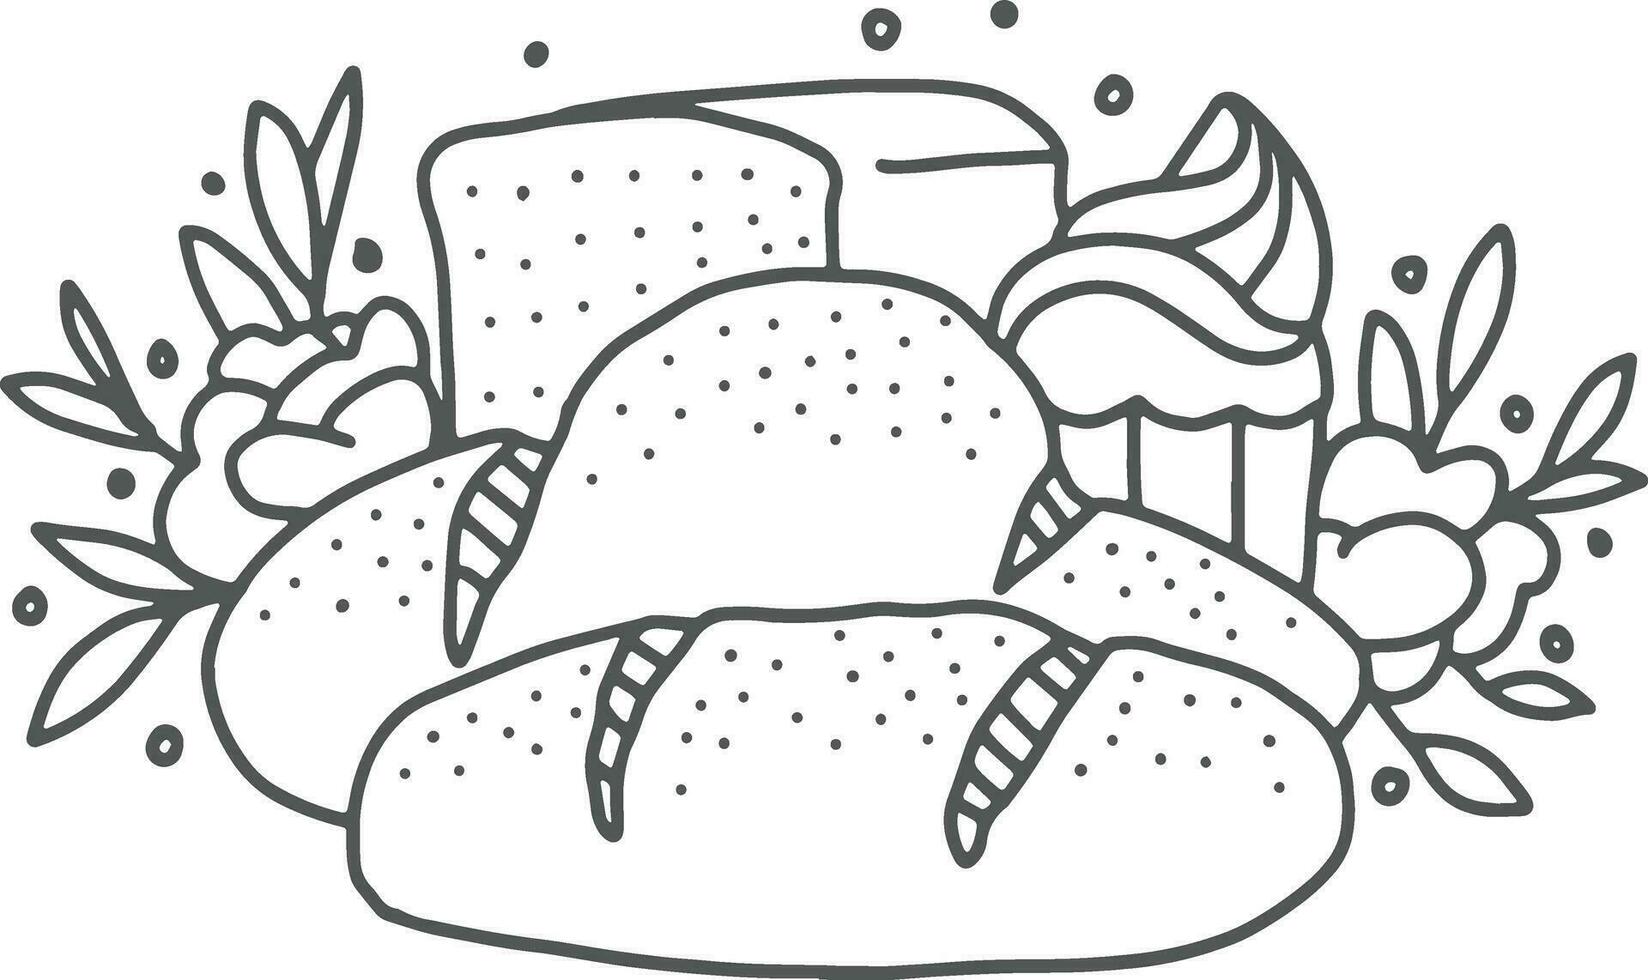 Brot Linie Kunst Vektor Illustration. Hand gezeichnet Gekritzel Bäckerei Symbol.